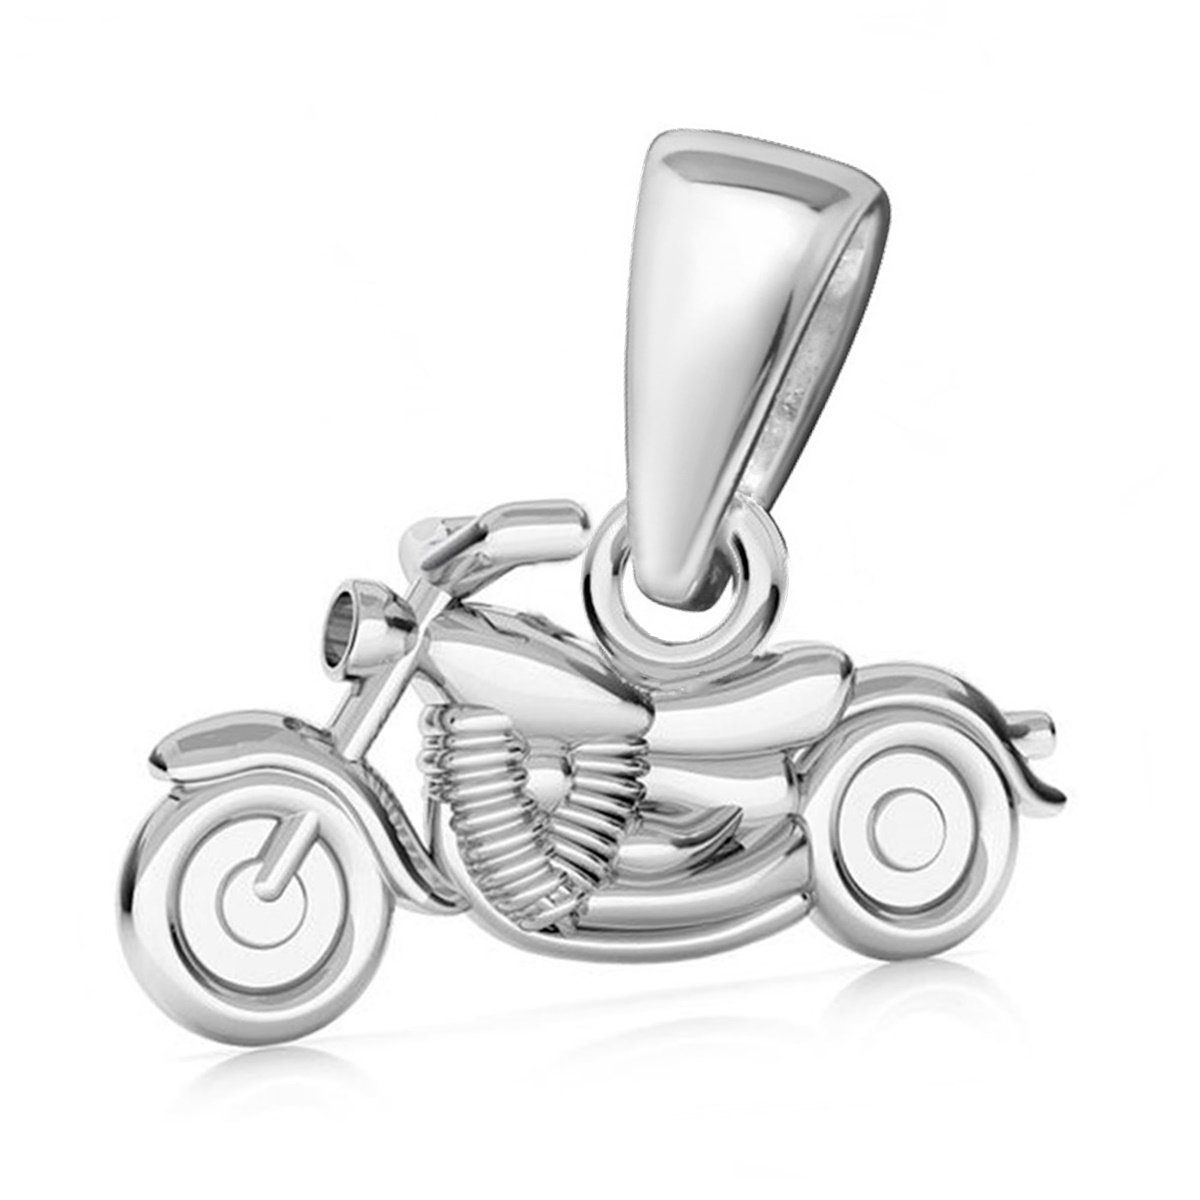 Goldene Hufeisen Kettenanhänger Motorrad Anhänger für Halskette aus 925 Silber Kettenanhänger (1 Stück, inkl. Etui)